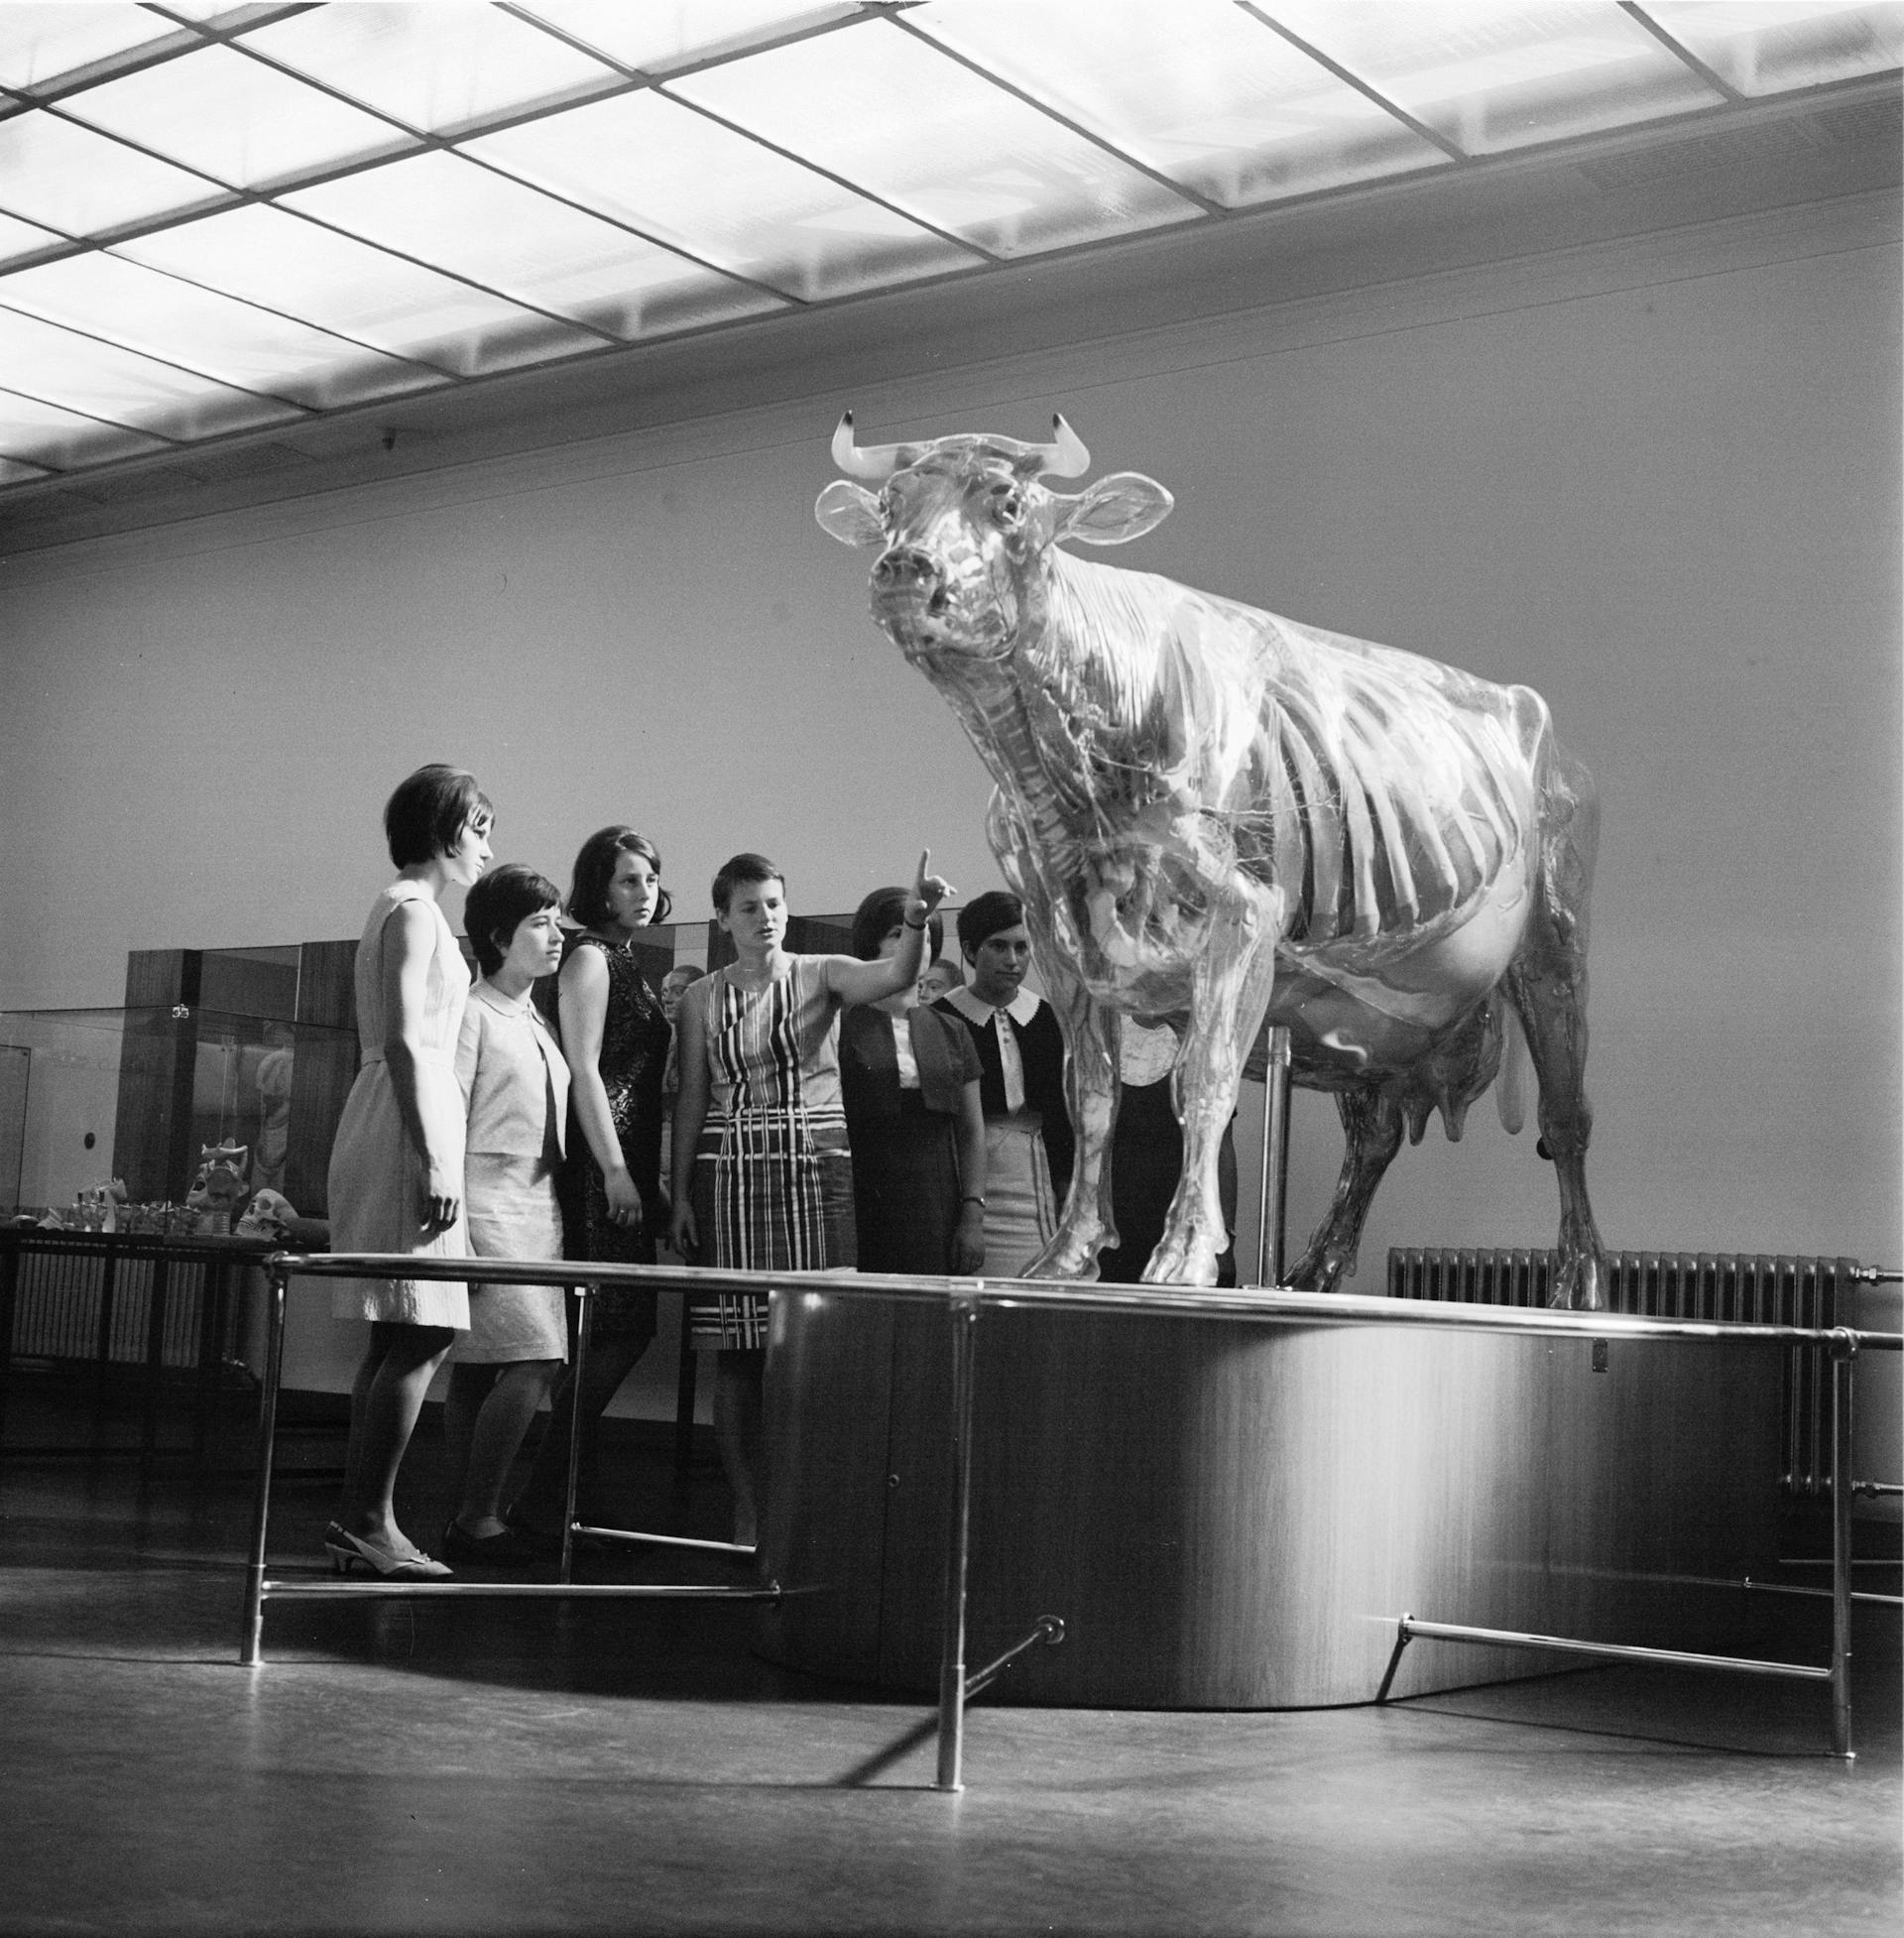  Glazen Koe in de permanente tentoonstelling van het Duitse Hygiene Museum, 1967. Foto: Richard Peter jun. Collectie SLUB Dresden / Deutsche Fotothek